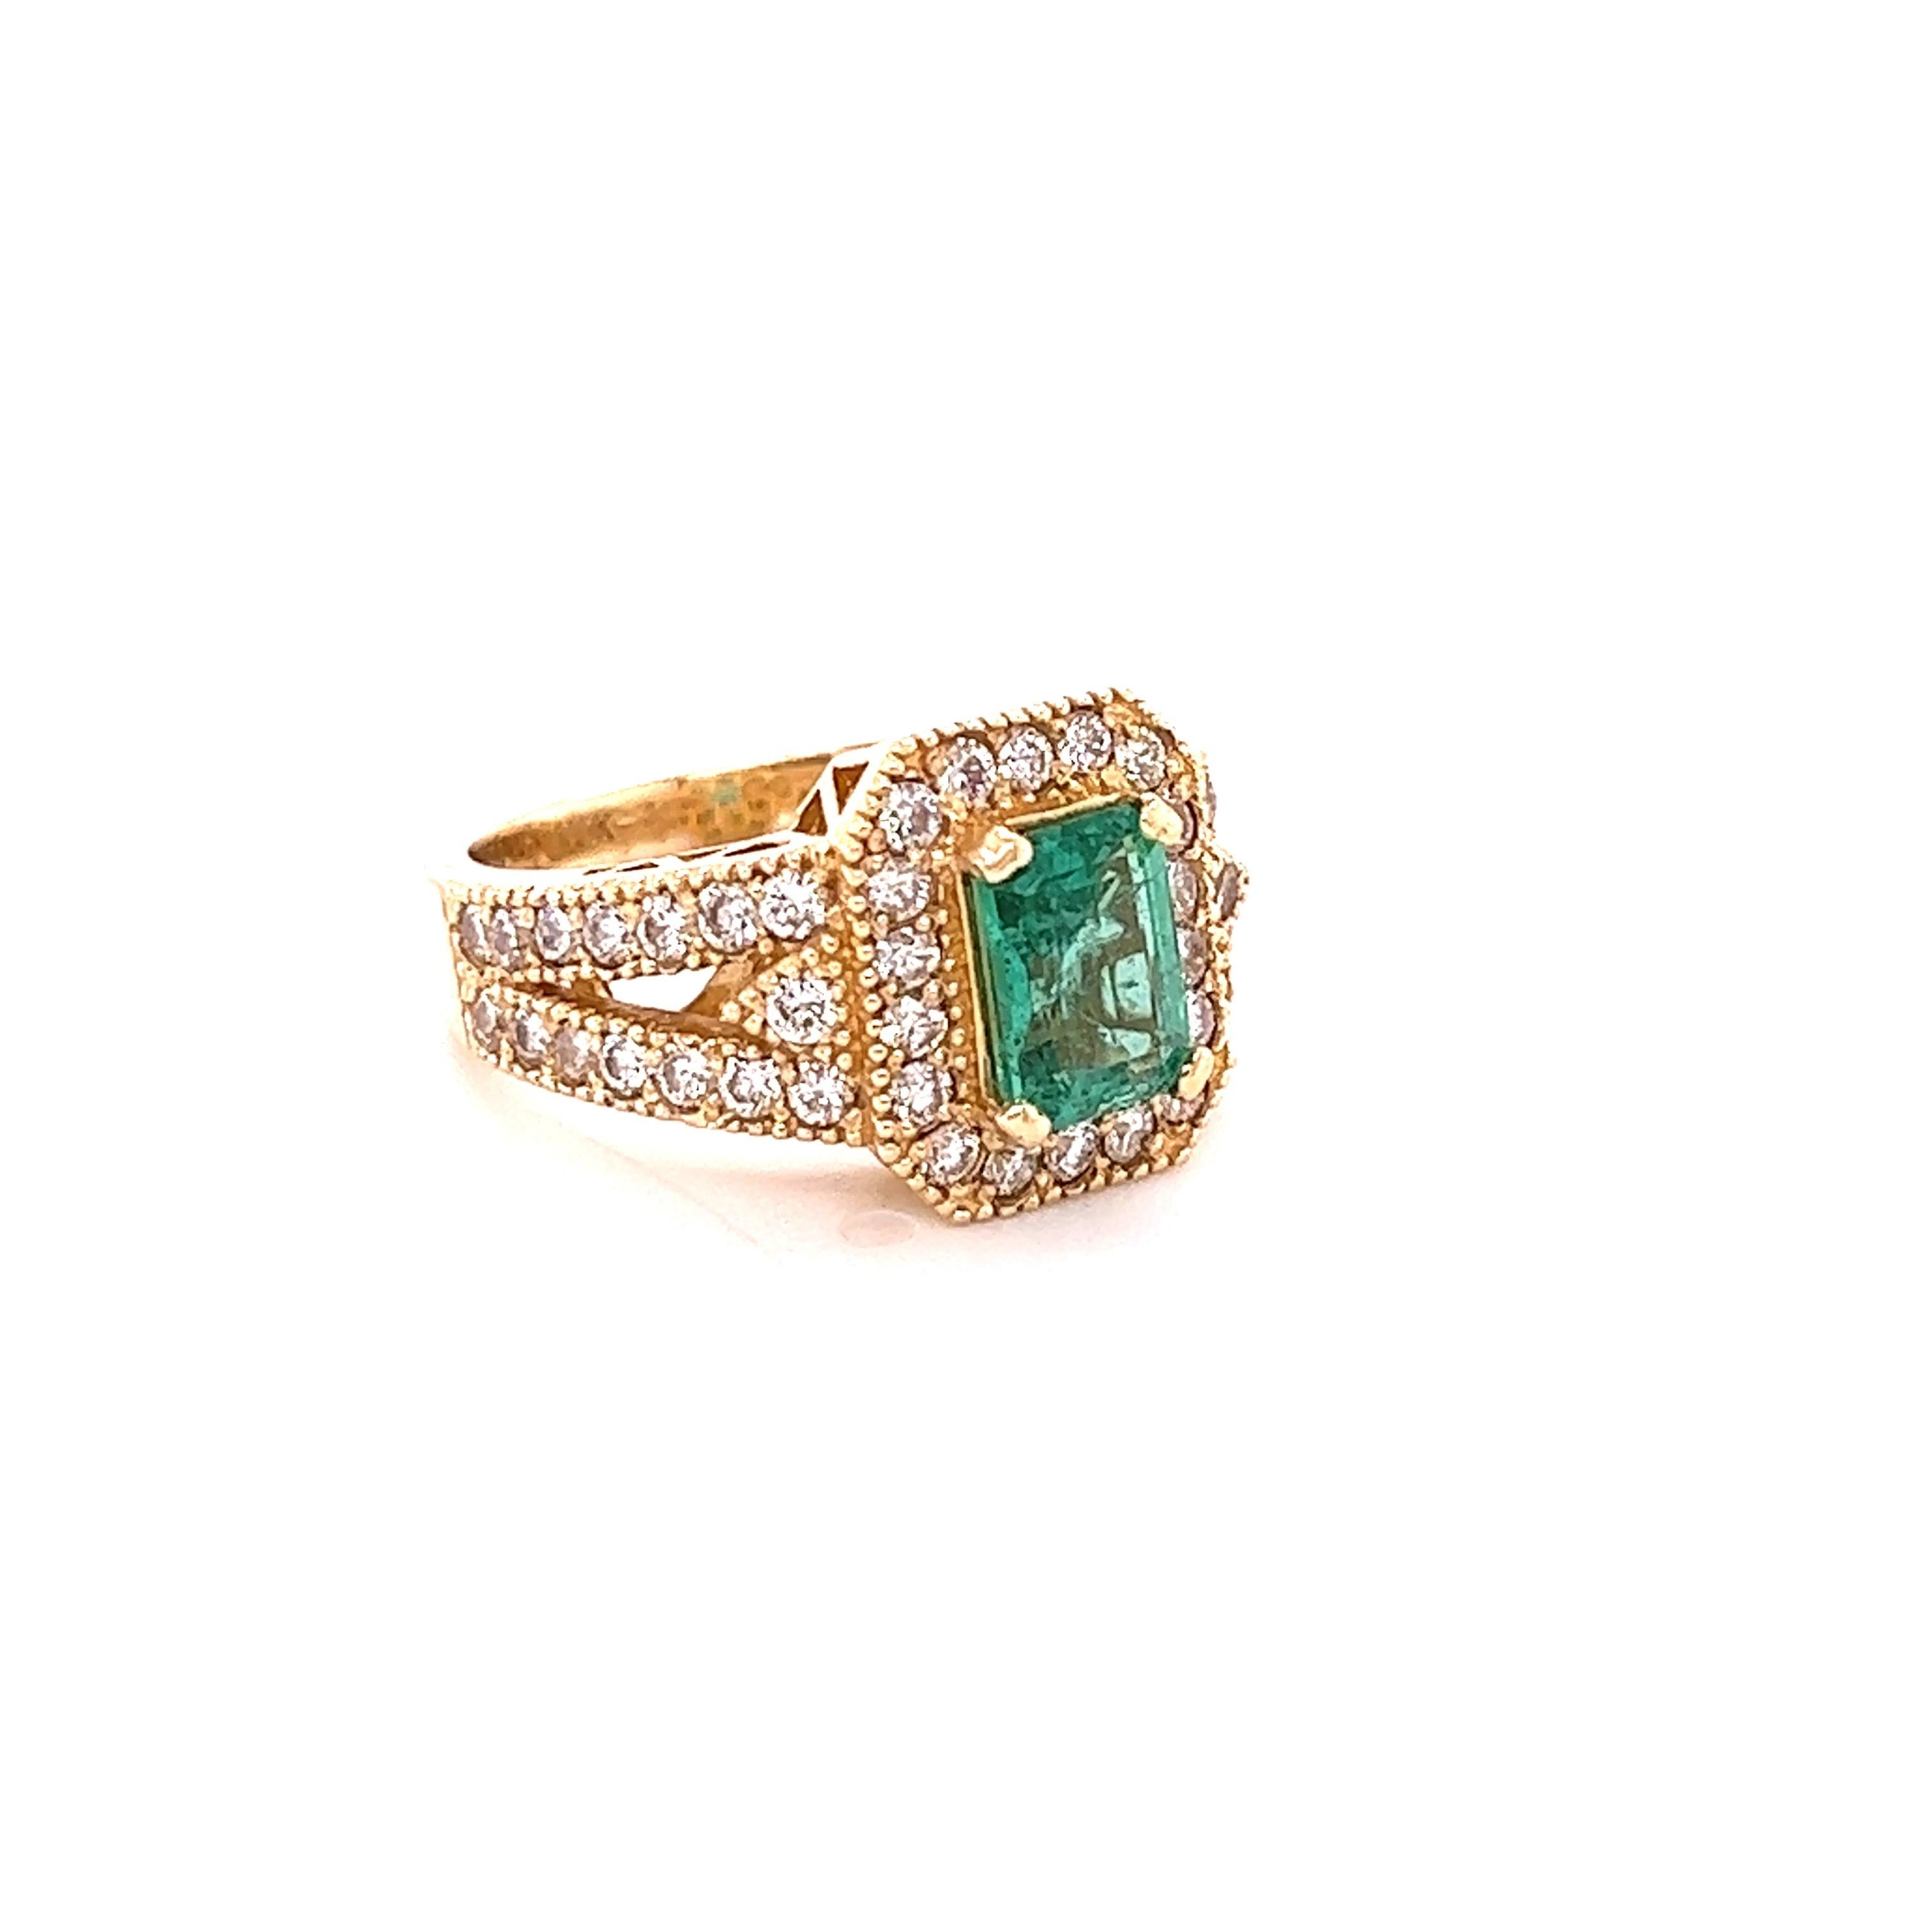 Ein wunderschöner, einzigartiger, viktorianisch inspirierter 2,44 Karat Smaragd- und Diamantring aus 14K Gelbgold. 
Der Ring wurde von GIA zertifiziert und die Zertifikatsnummer lautet: 5211083419
Der Smaragd im Smaragdschliff misst 8 mm x 6 mm und